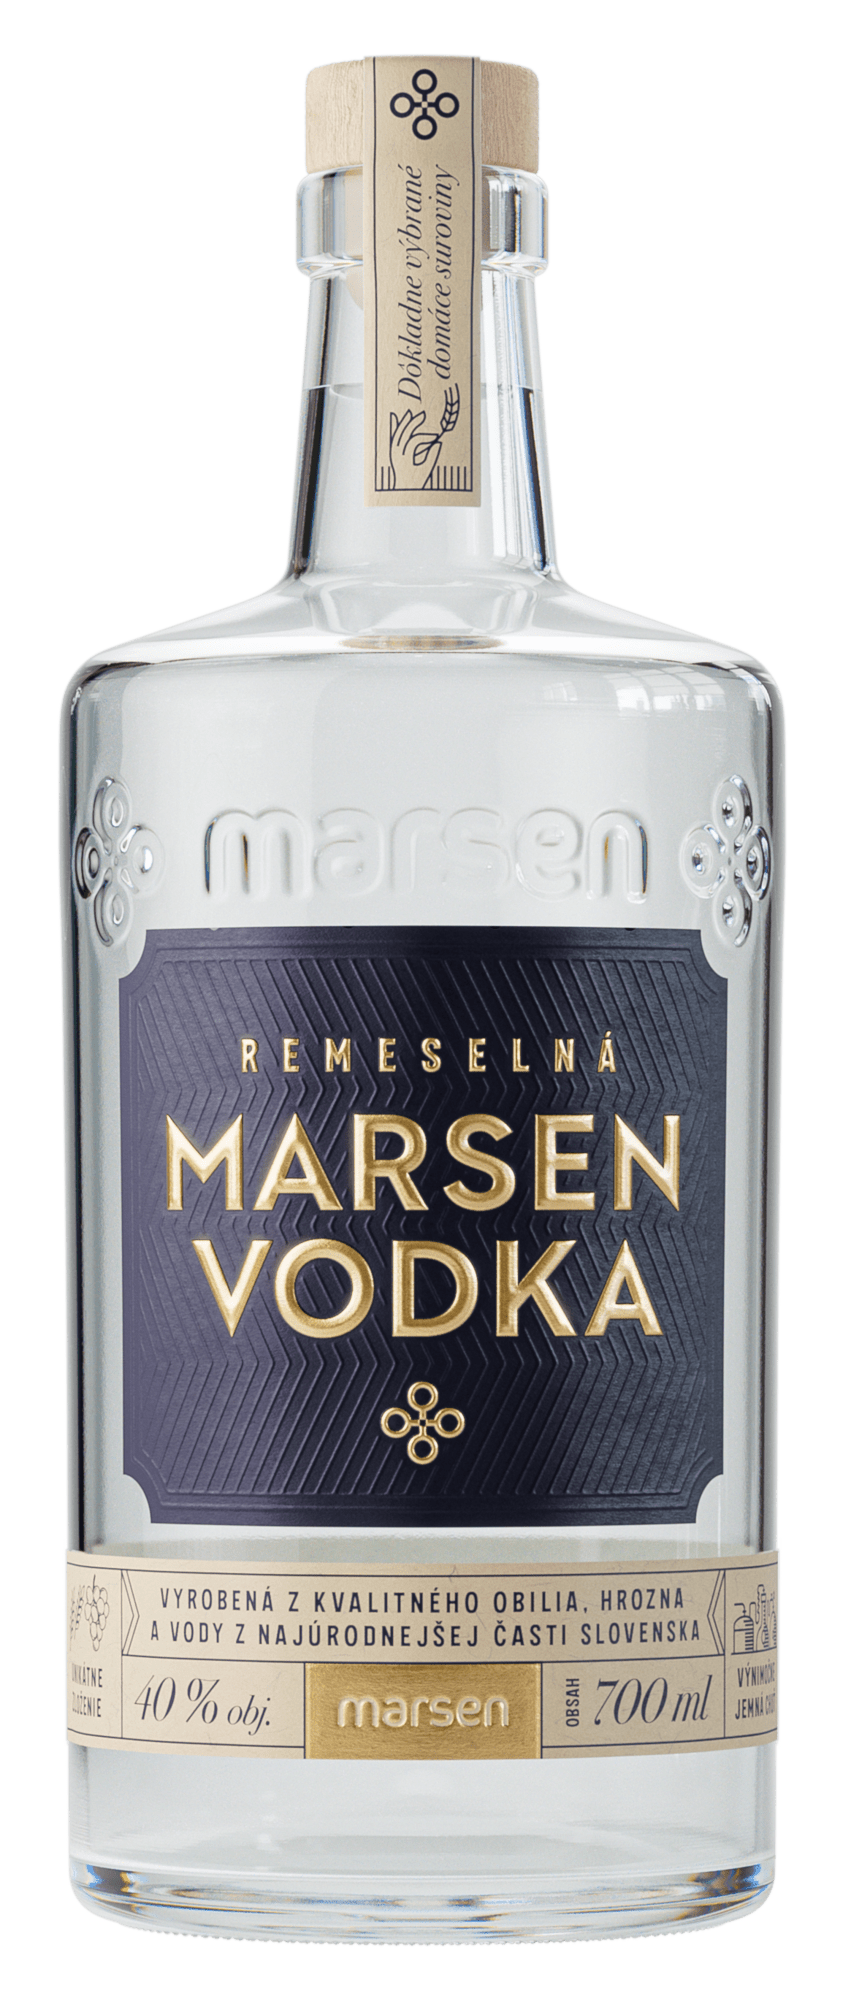 Marsen Remeselná vodka